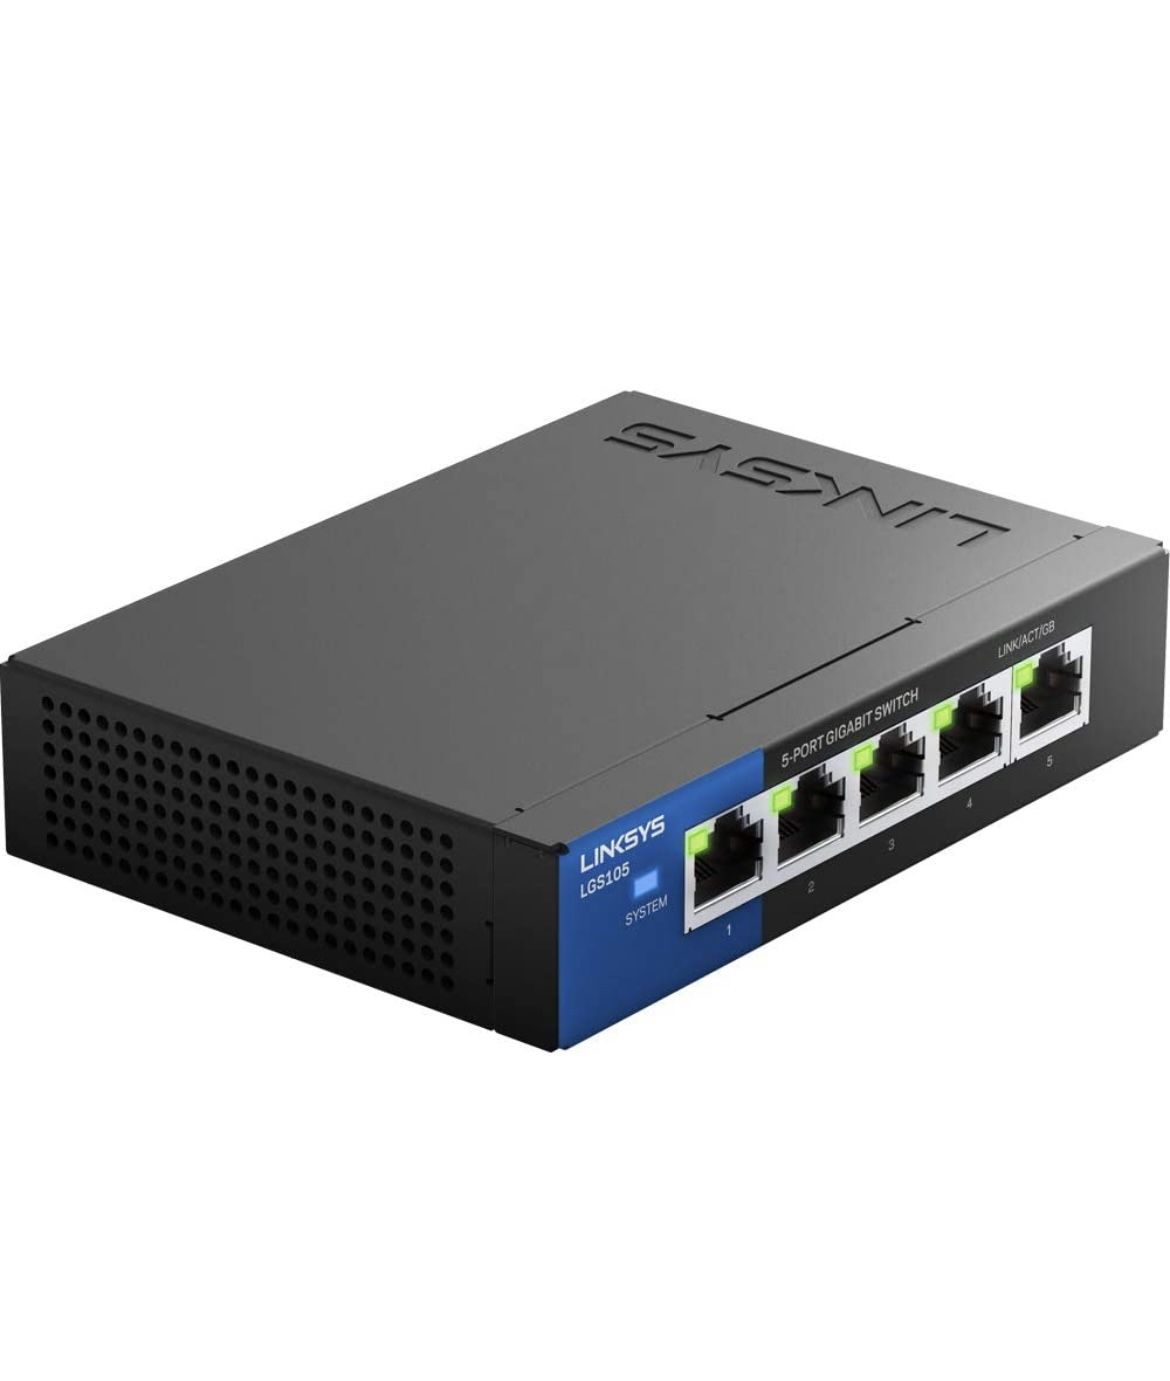 Linksys LGS105 Business 5-Port Desktop Gigabit Ethernet Network Unmanaged Switch I Metal Enclosure,Black/Blue